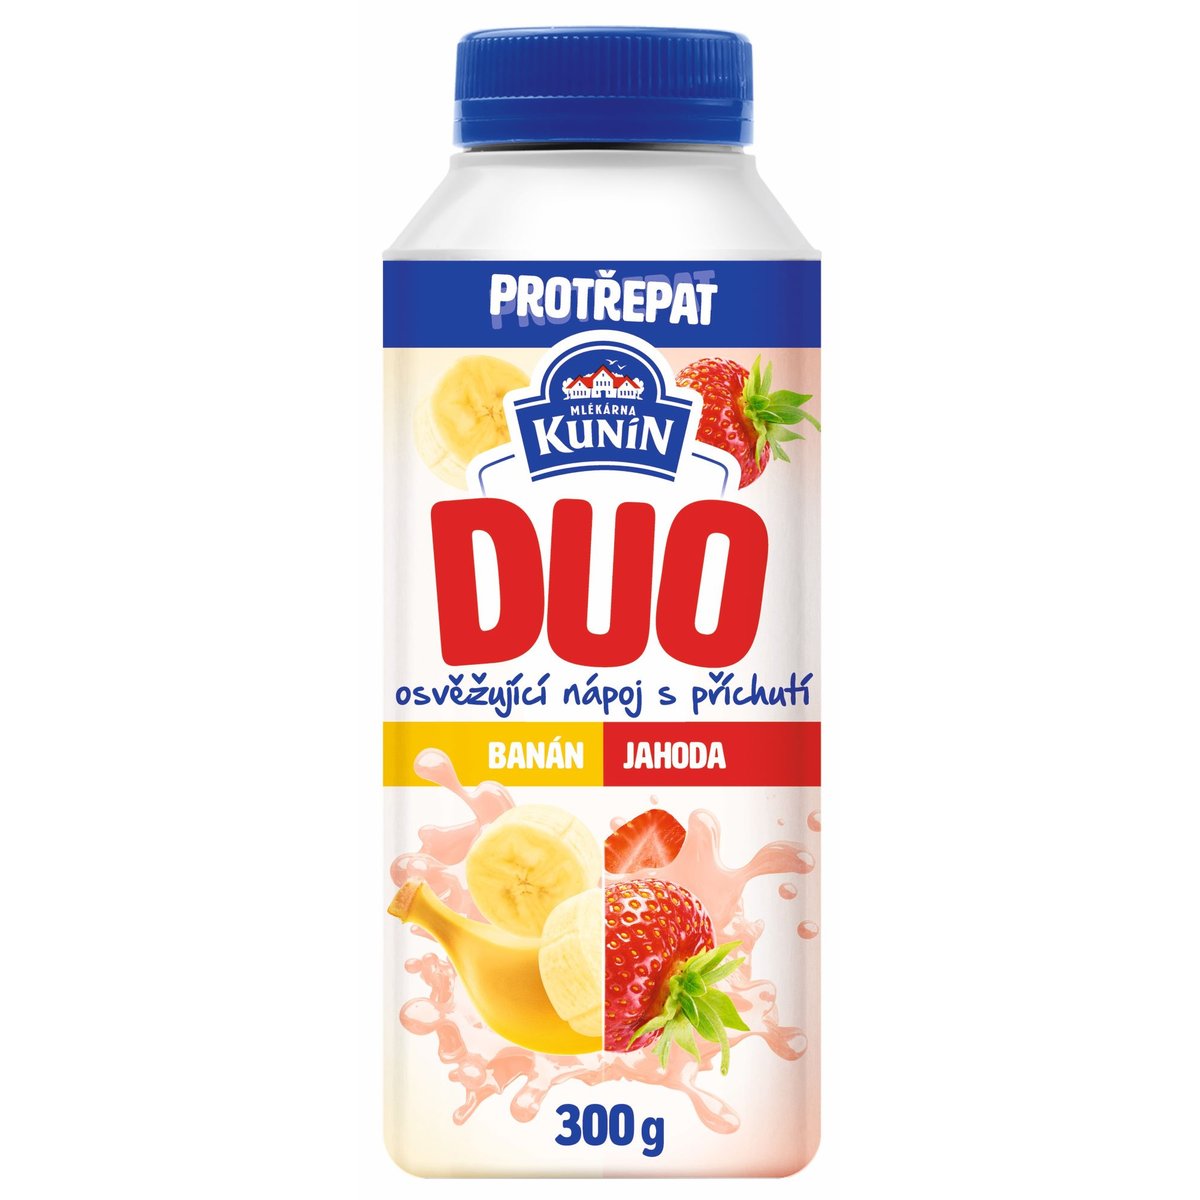 Mlékárna Kunín Duo zakysaný nápoj s příchutí banán a jahoda